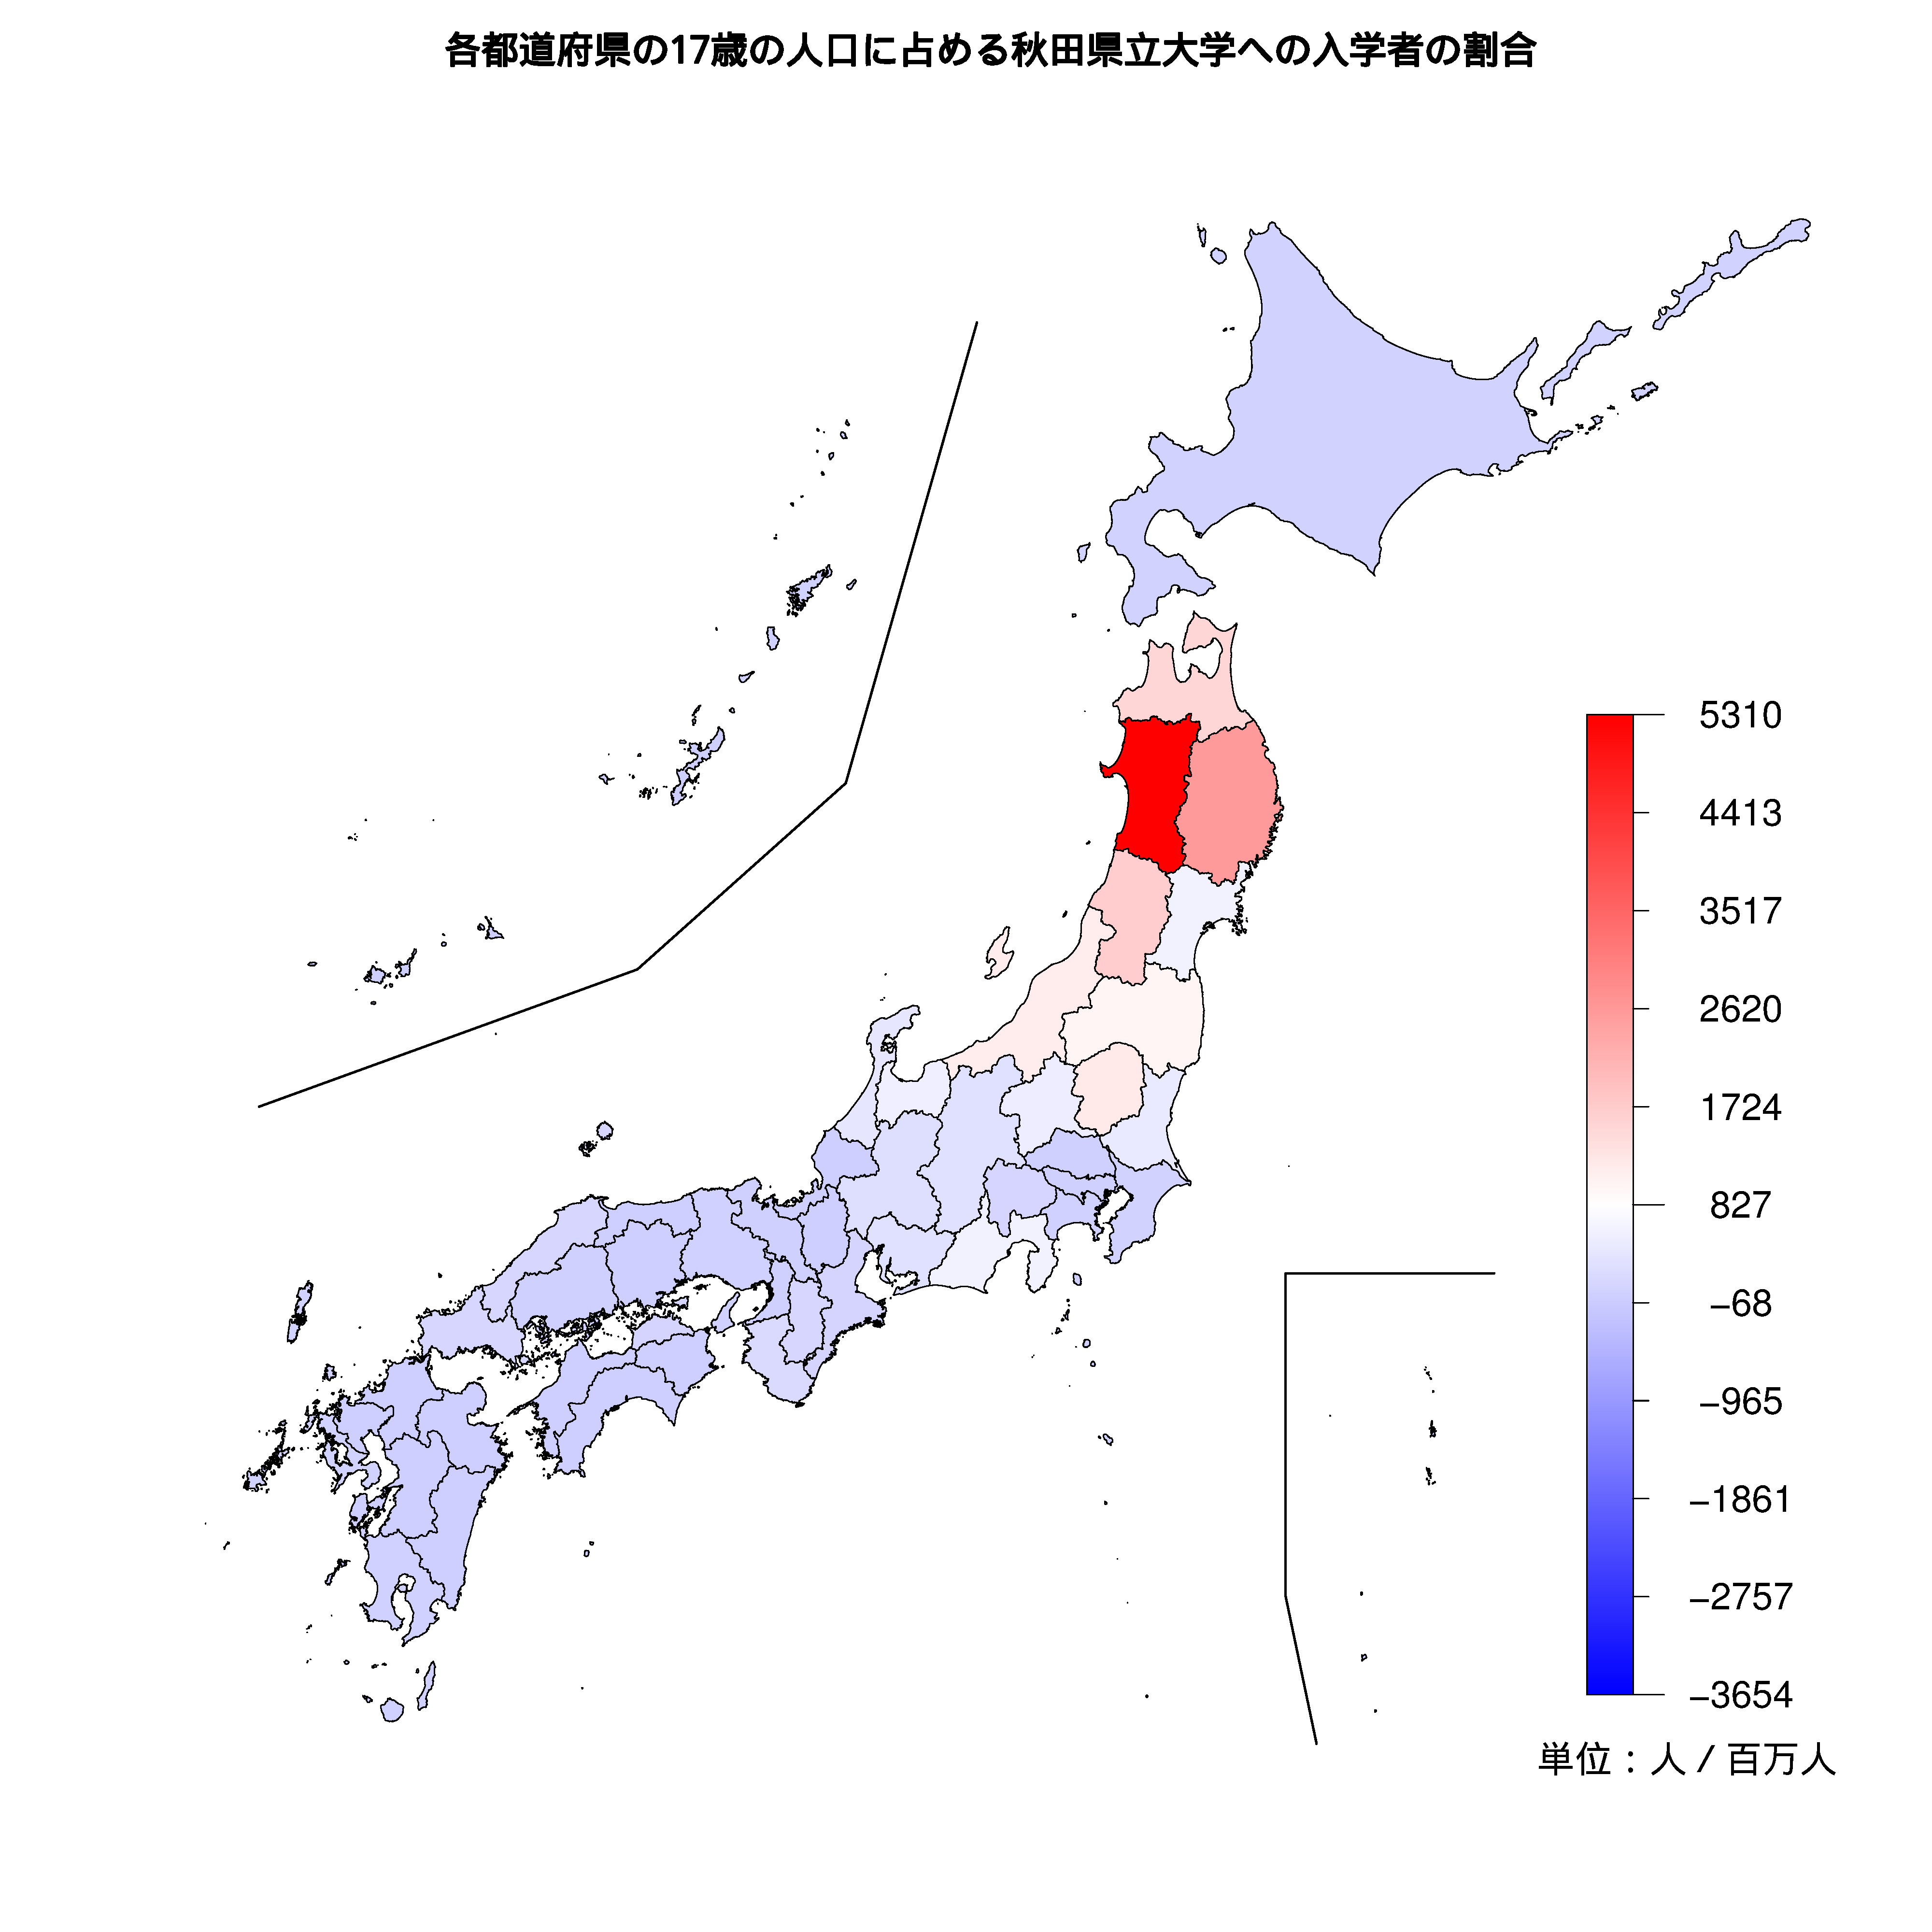 秋田県立大学への入学者が多い都道府県の色分け地図